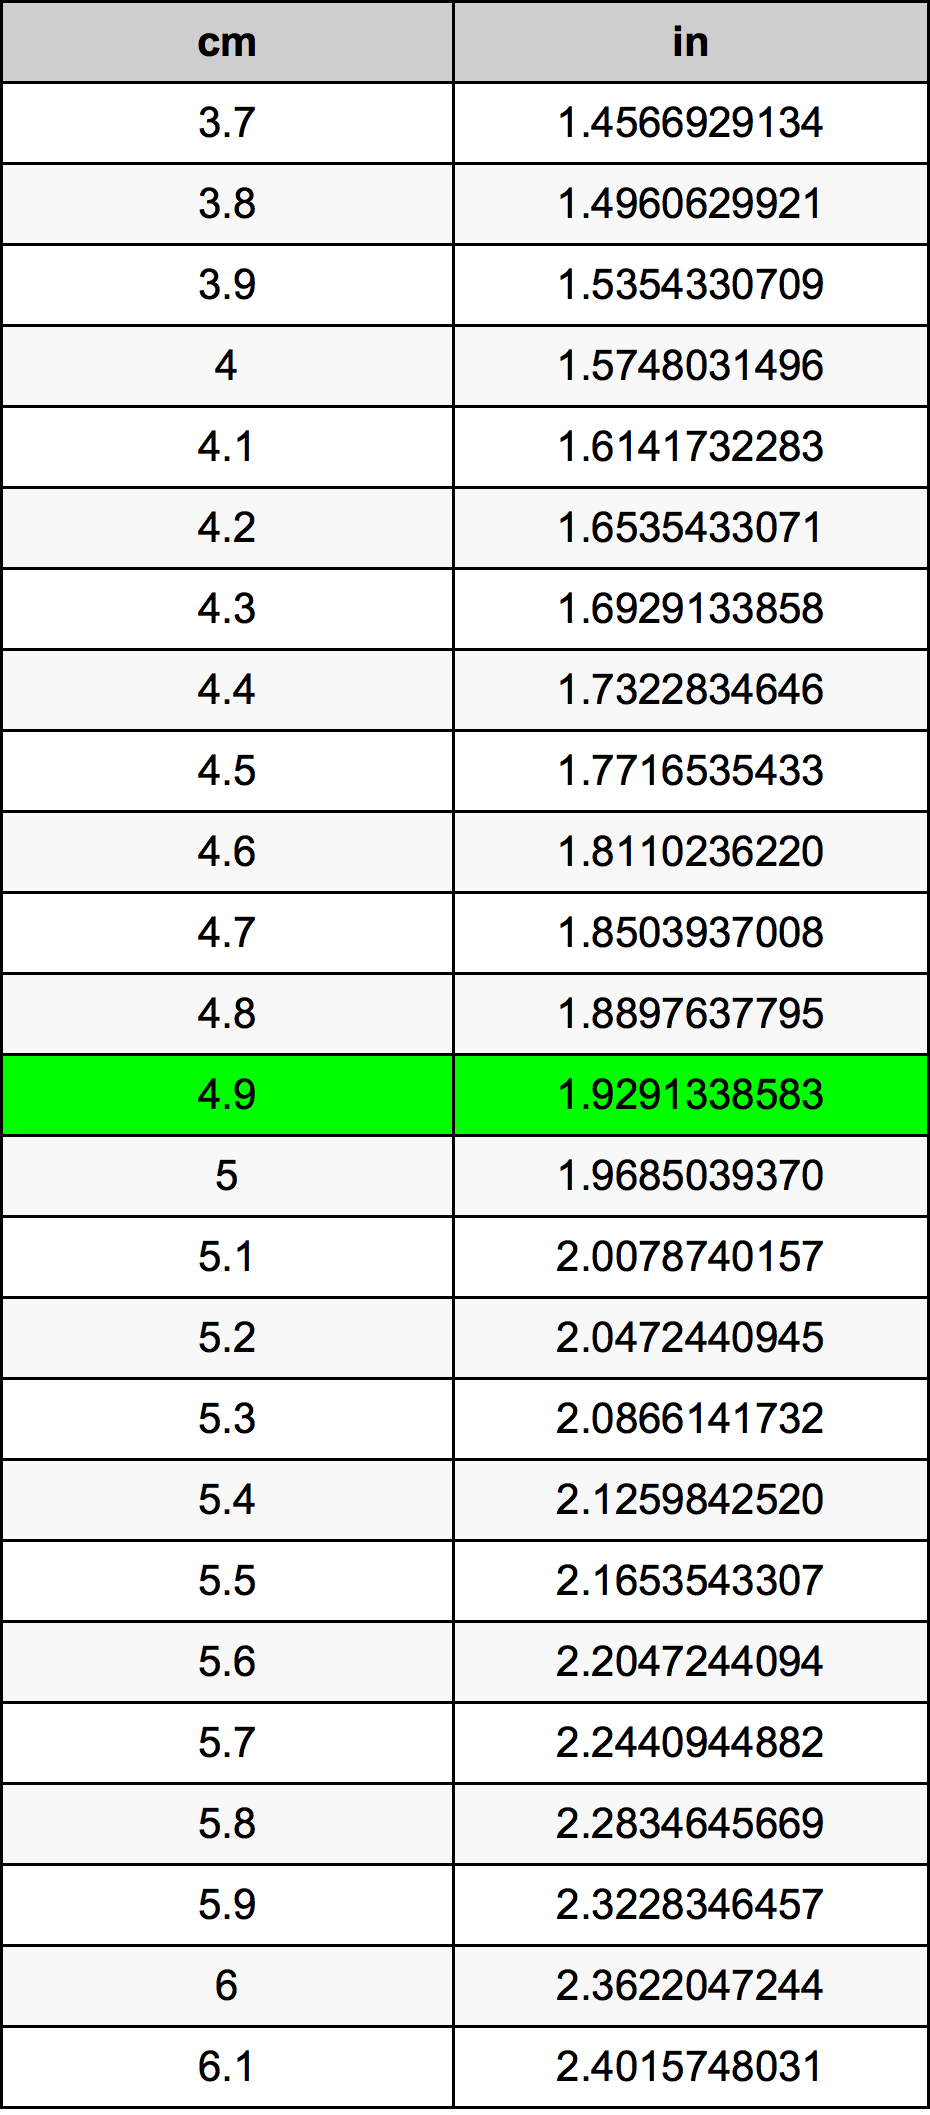 4.9 Centiméter átszámítási táblázat